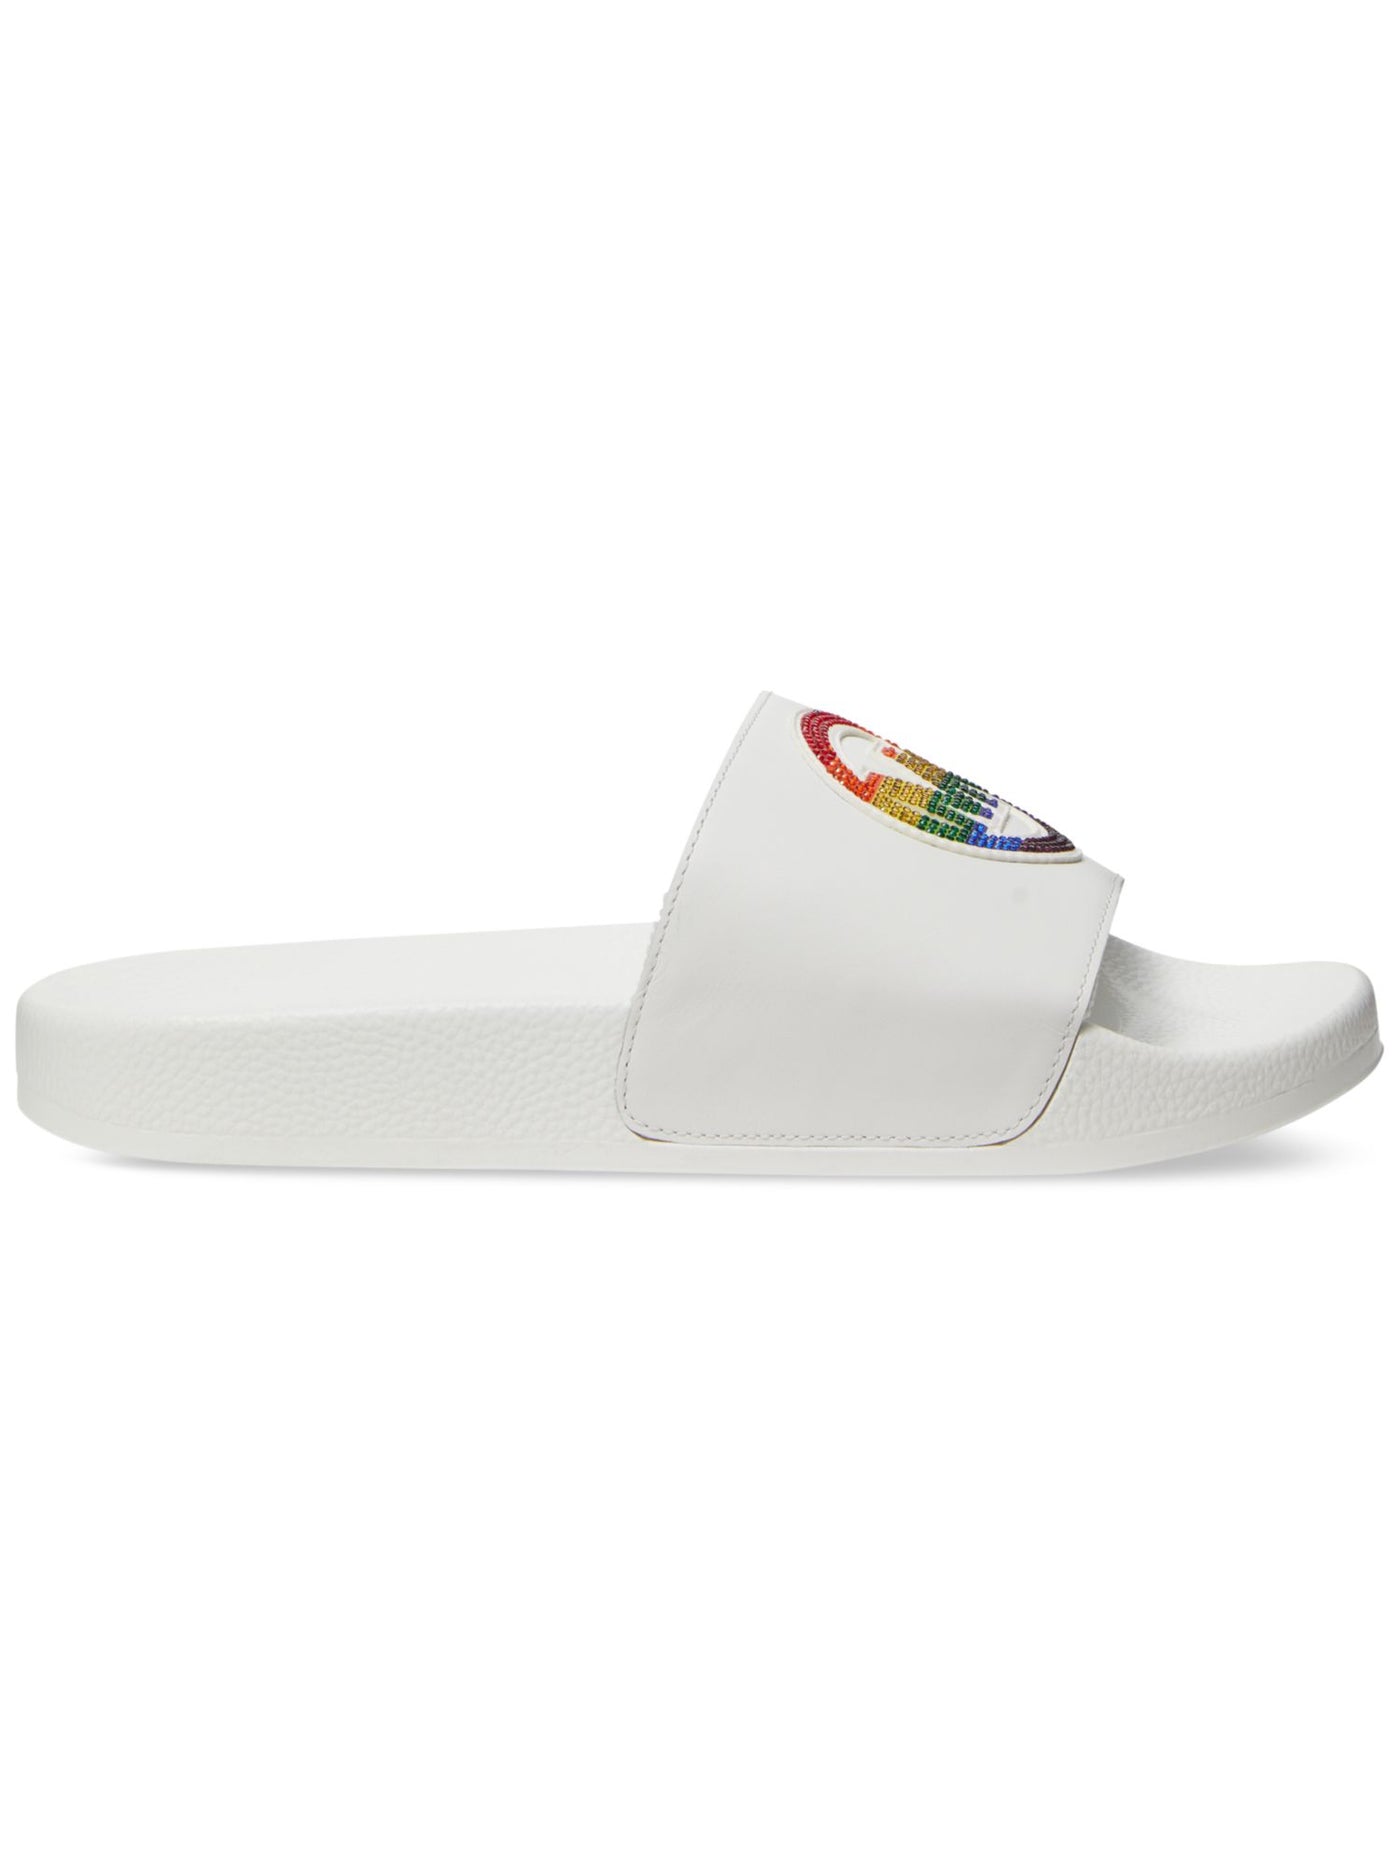 MICHAEL KORS Mens White Mixed Media Embellished Comfort Jake Round Toe Platform Leather Slide Sandals Shoes 9